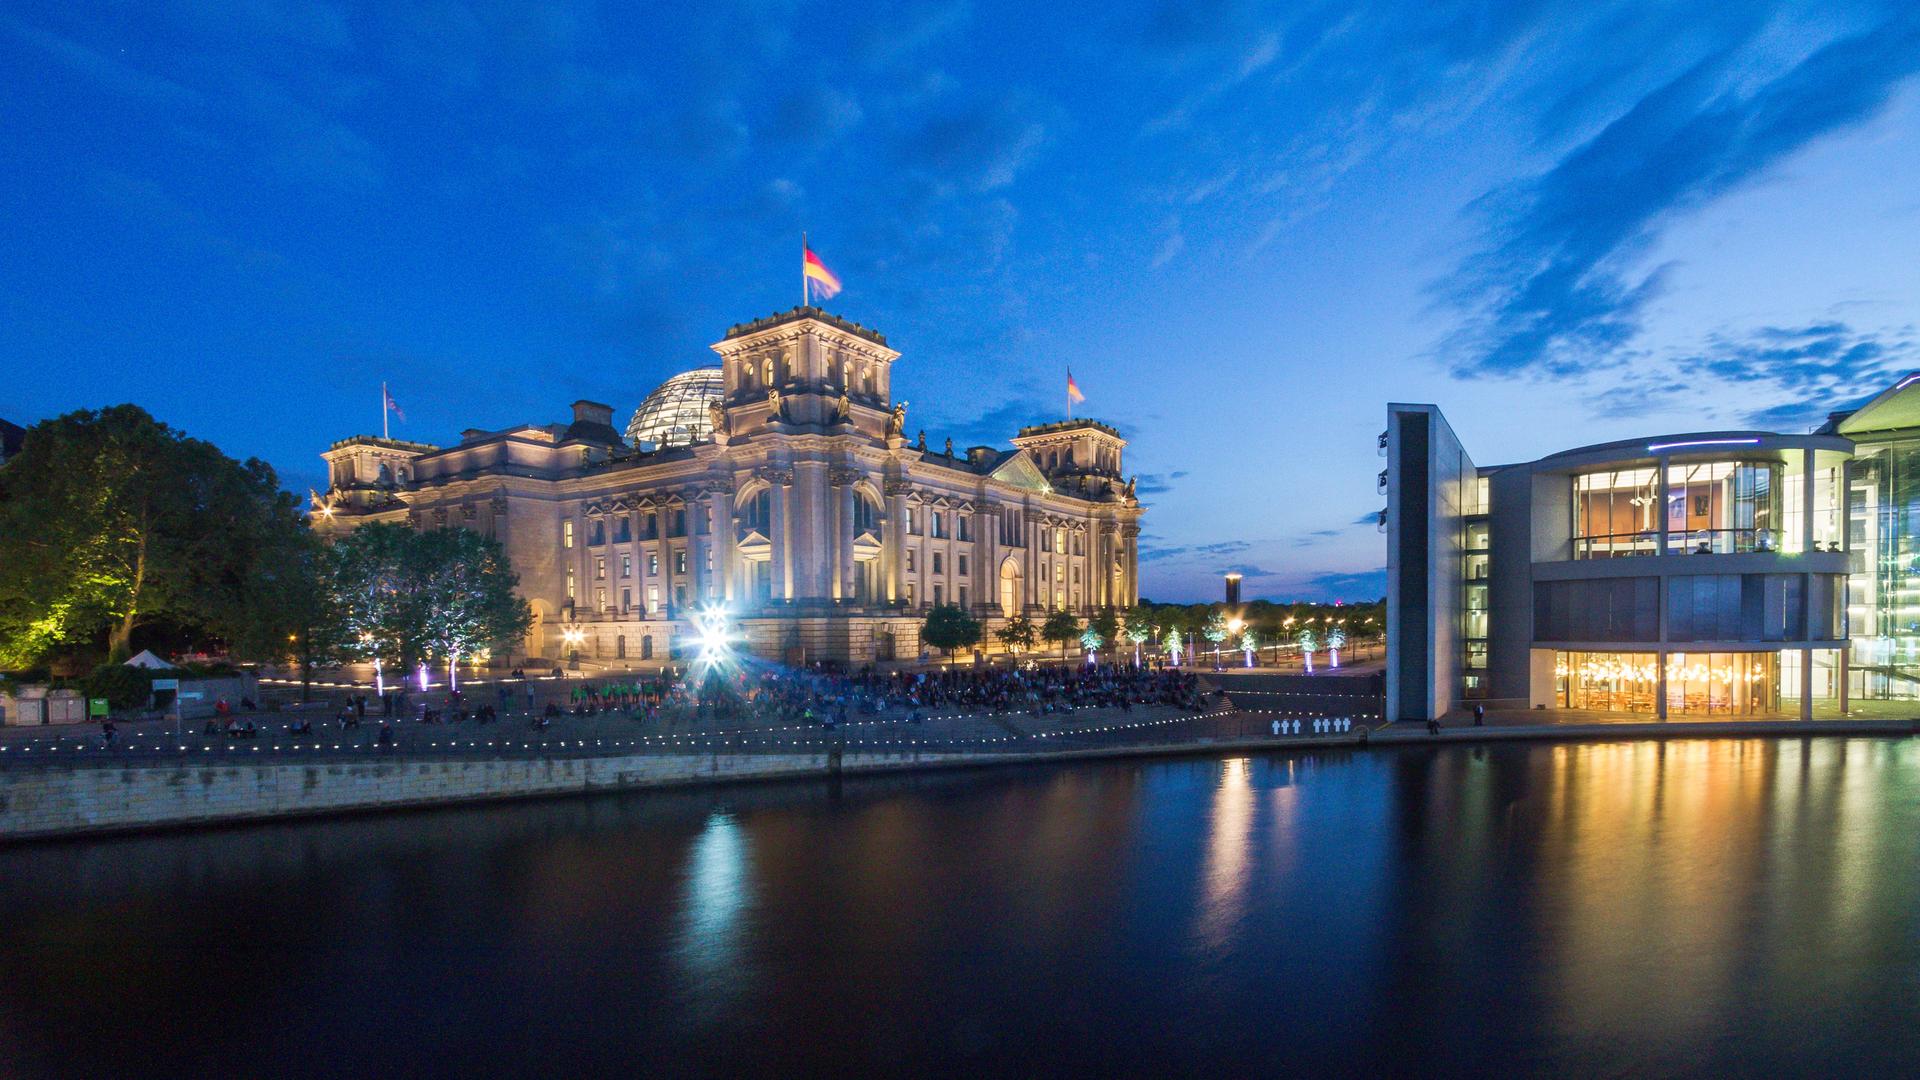 Panorama des Berliner Reichstags neben dem Deutschen Bundestag bei Nacht.